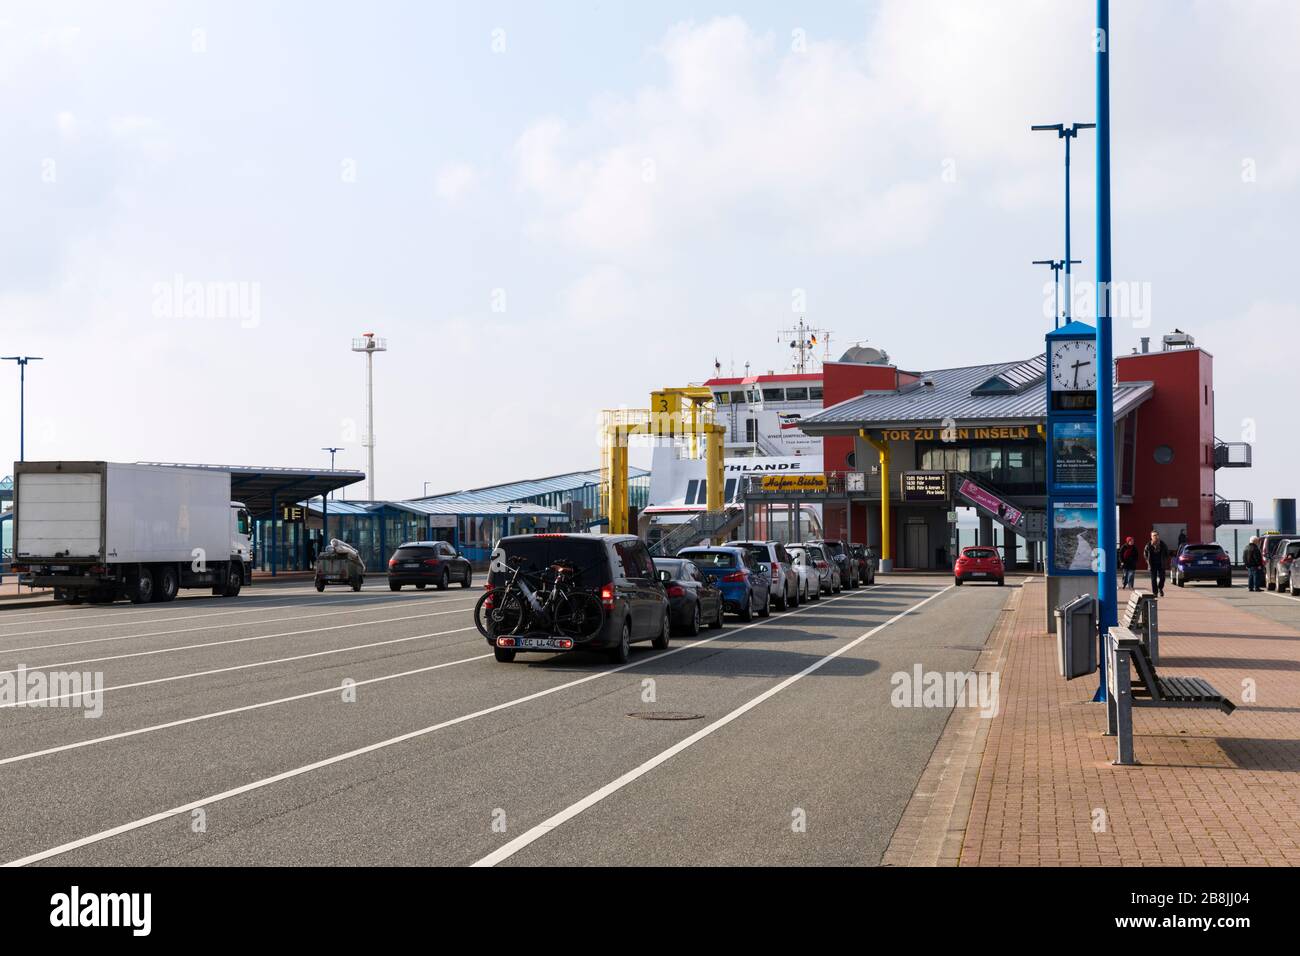 Dagebüll, Germania - 5 marzo 2020: Vista panoramica del terminal dei traghetti a bassa marea, traghetto UTHLANDE ormeggiato, auto in attesa in linea. Foto Stock